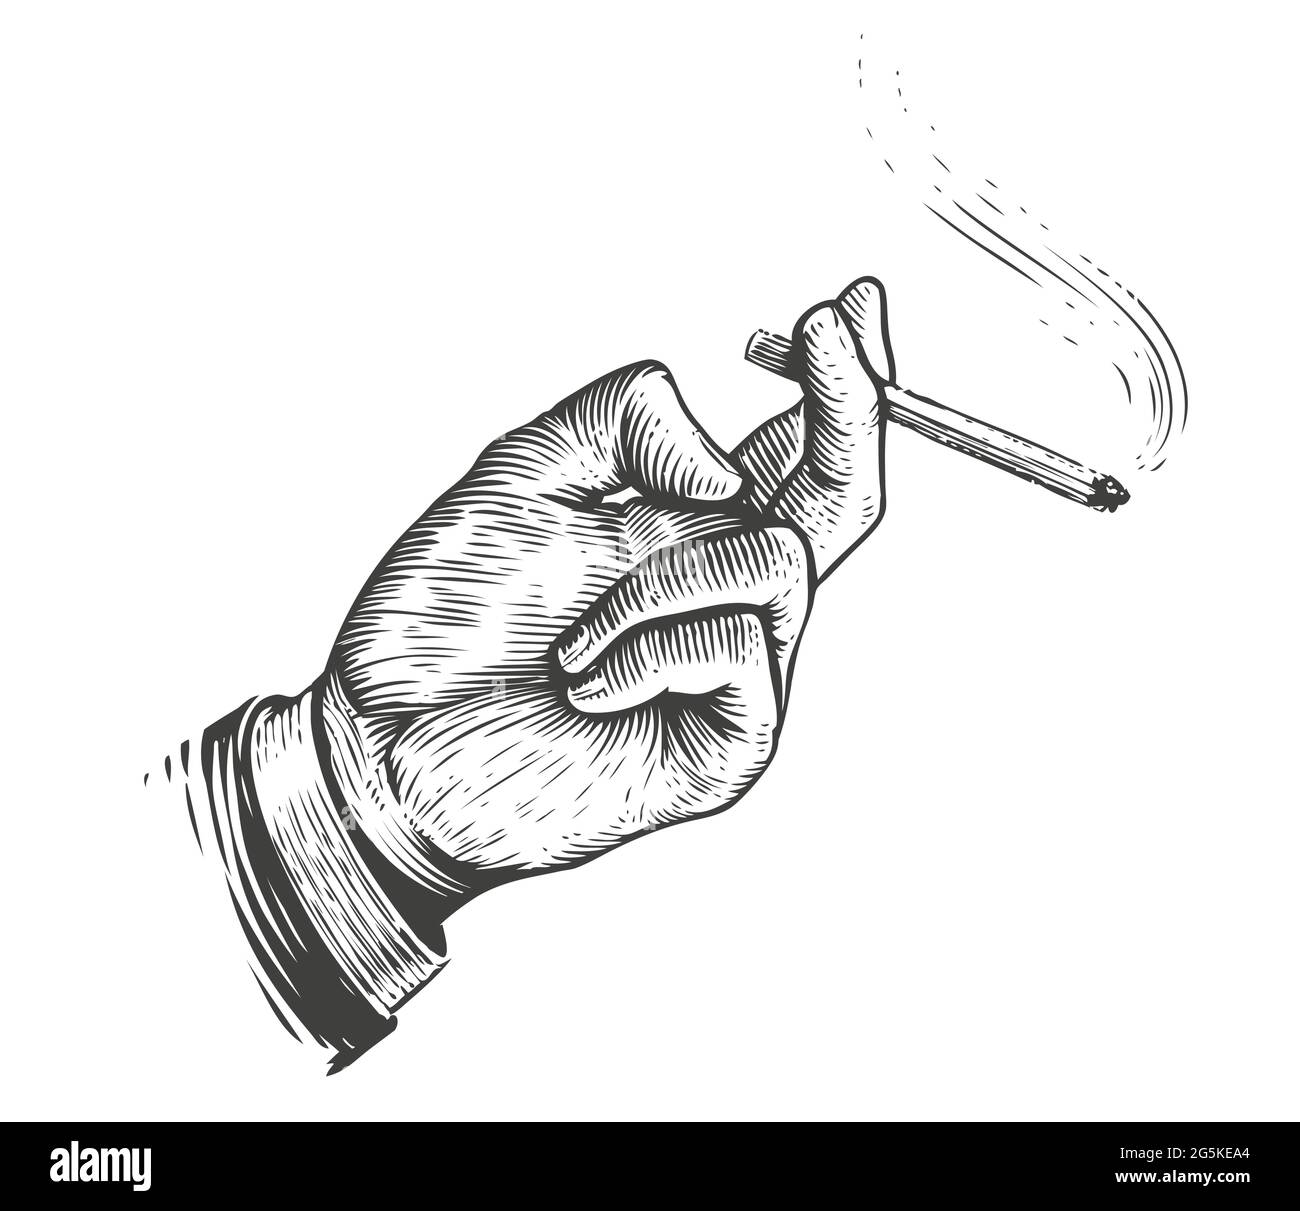 Brise-fumée. Cigarette à la main dans un style de gravure vintage Illustration de Vecteur